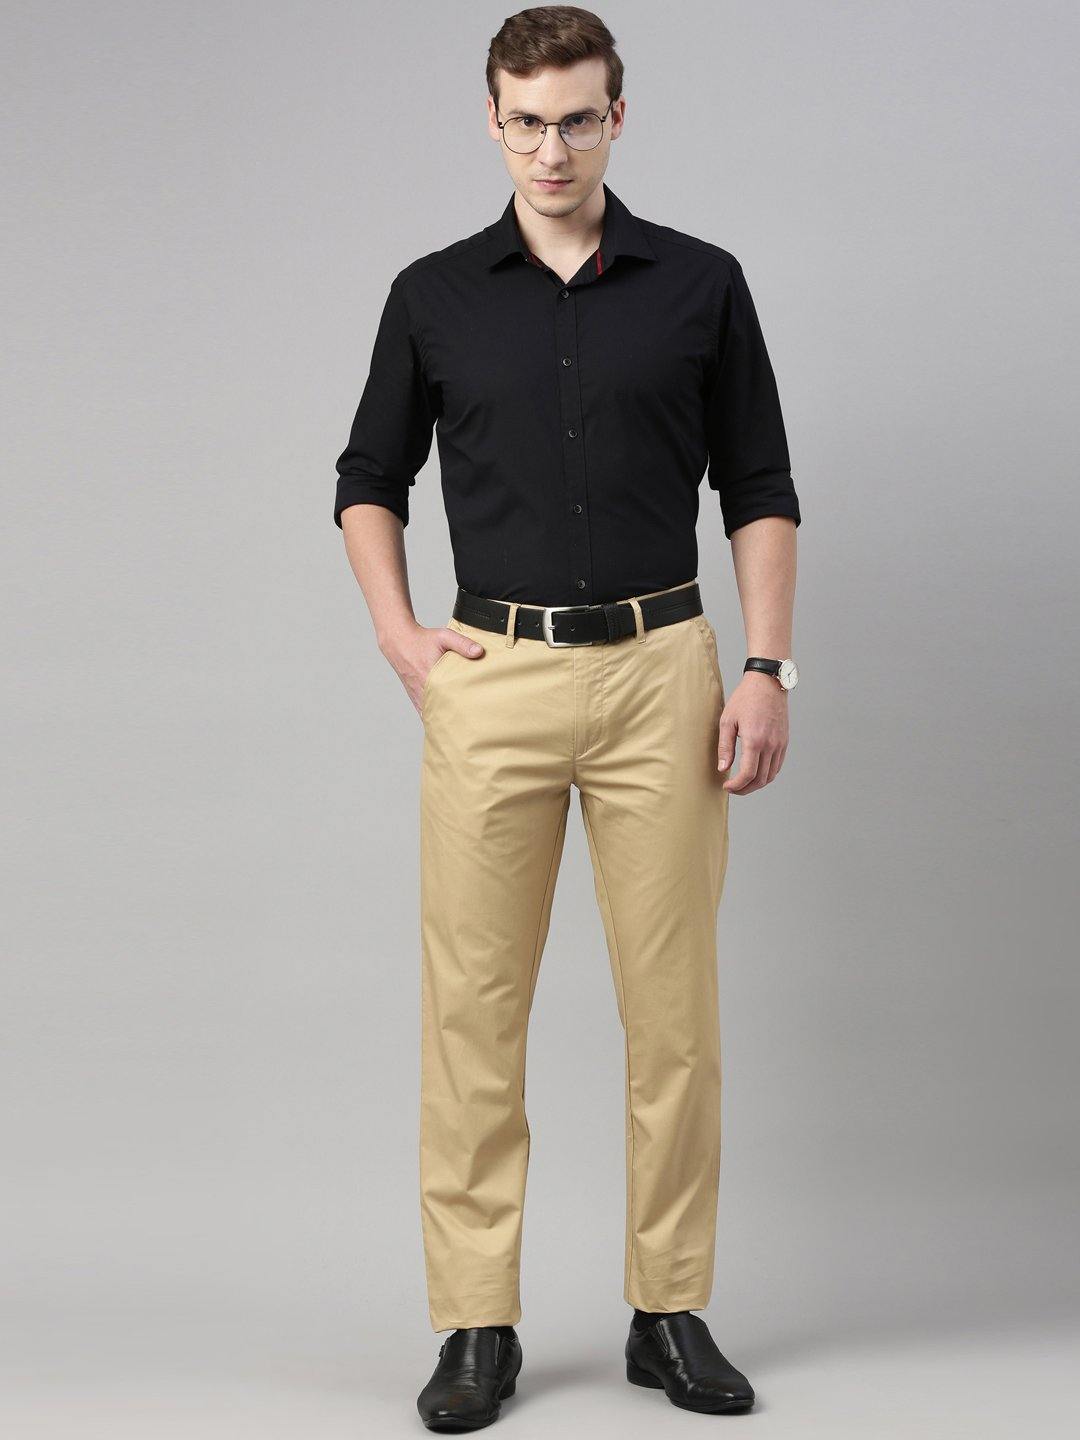 Plus Size Pants  8159 Stretchable Cotton Pants